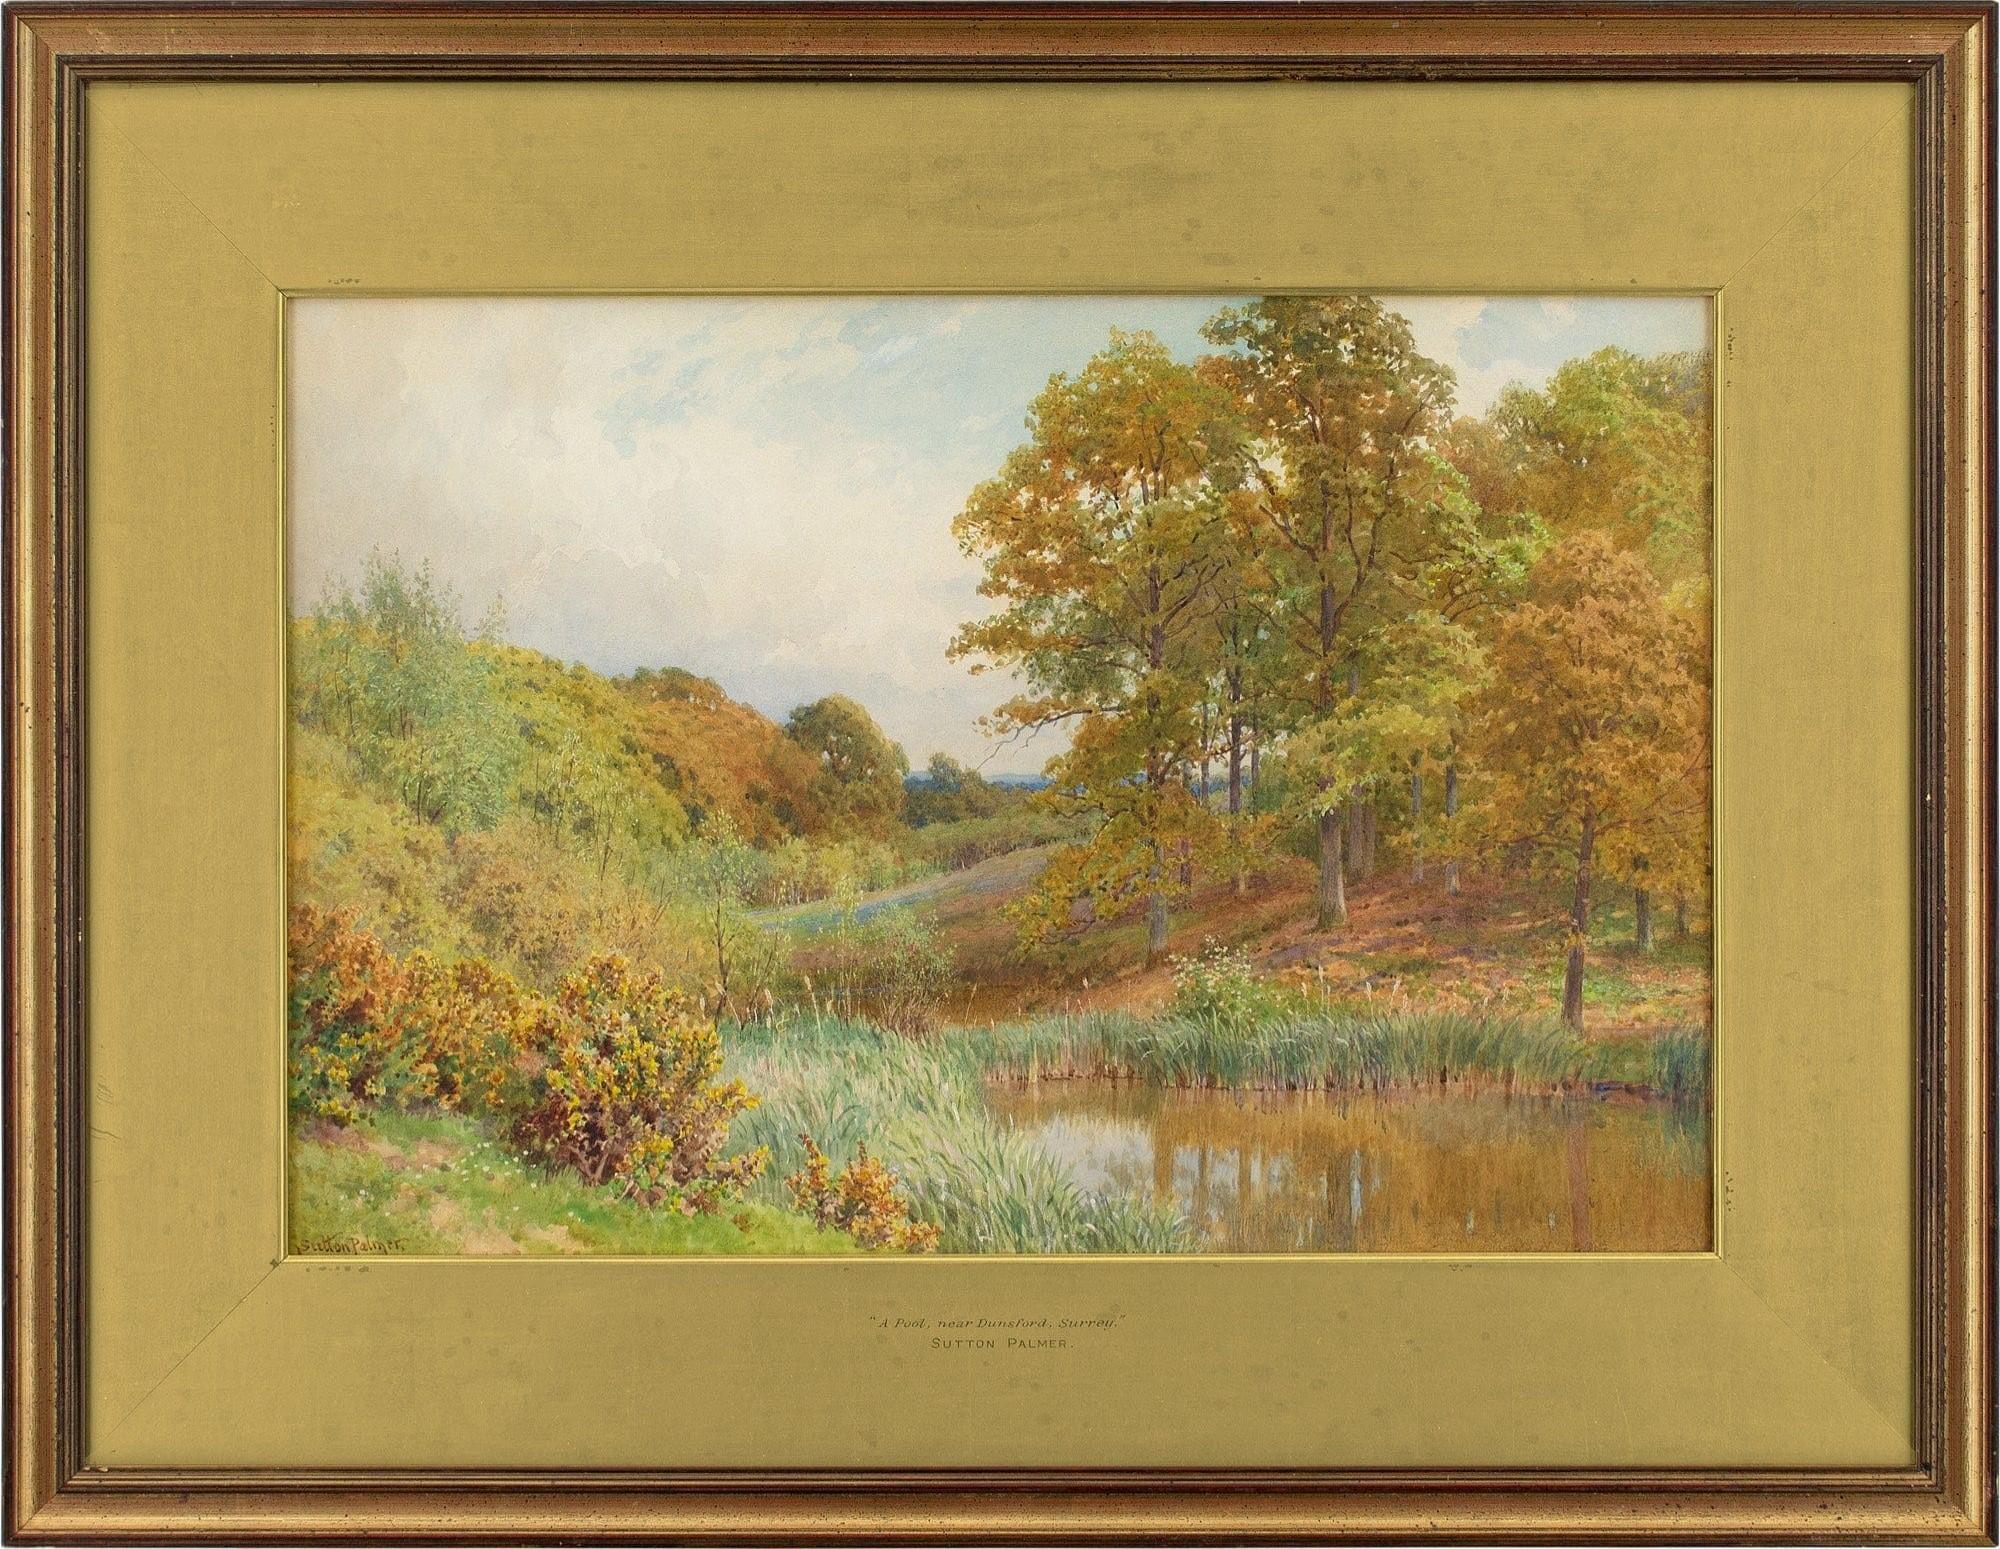 Cette belle aquarelle de la fin du XIXe siècle de l'artiste britannique Harold Sutton Palmer RIBA (1854-1933) représente une vue de la rivière près de Dunsford dans le Surrey.

Scintillant entre des rives verdoyantes, un bassin d'eau reposante